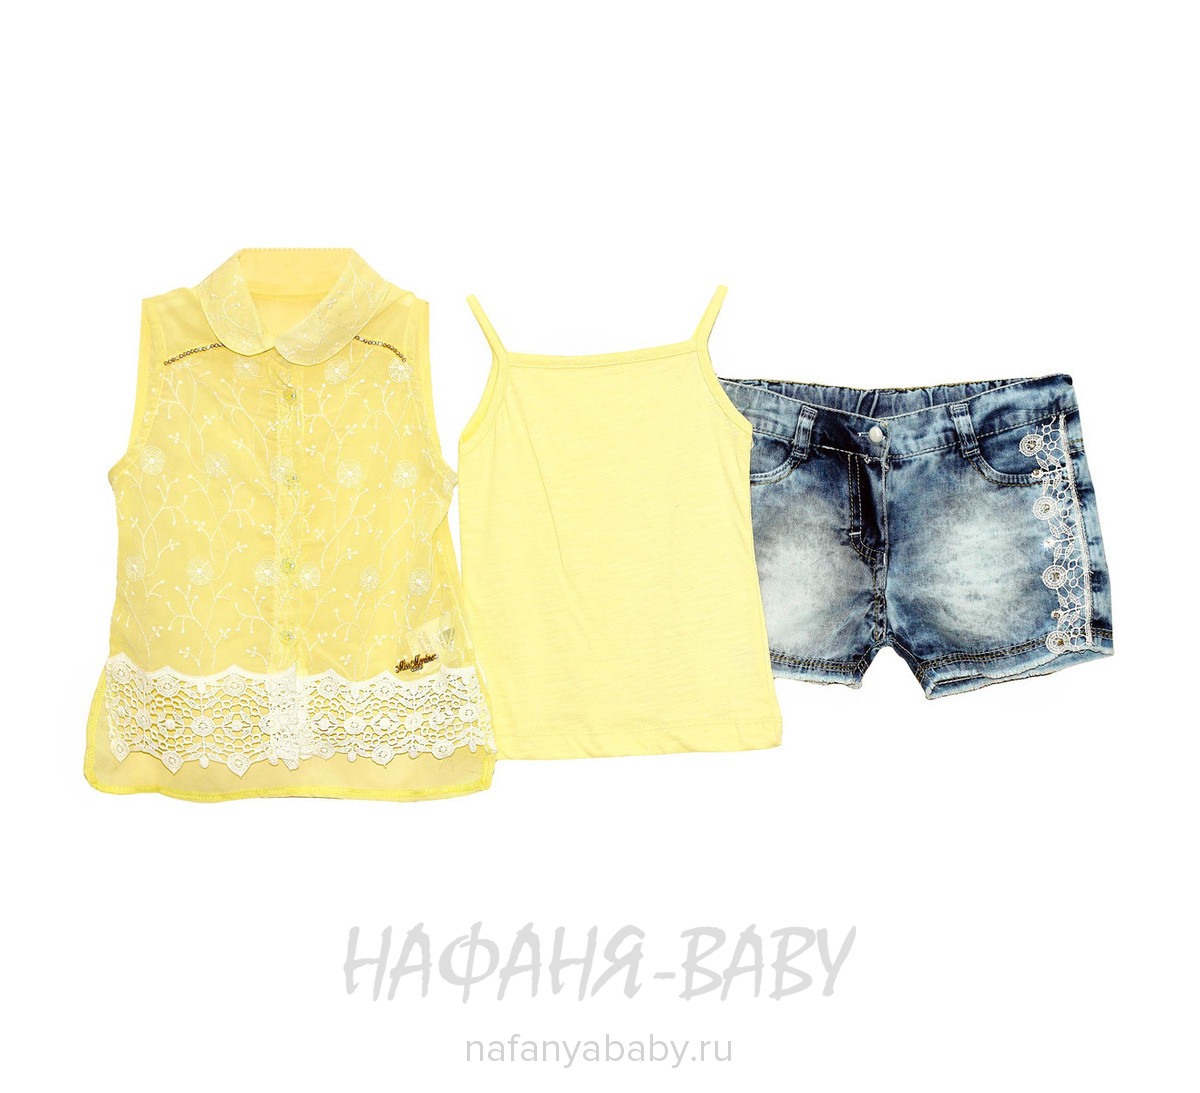 Детский комплект (блузка+майка+шорты) MISS MARINE, купить в интернет магазине Нафаня. арт: 0527.